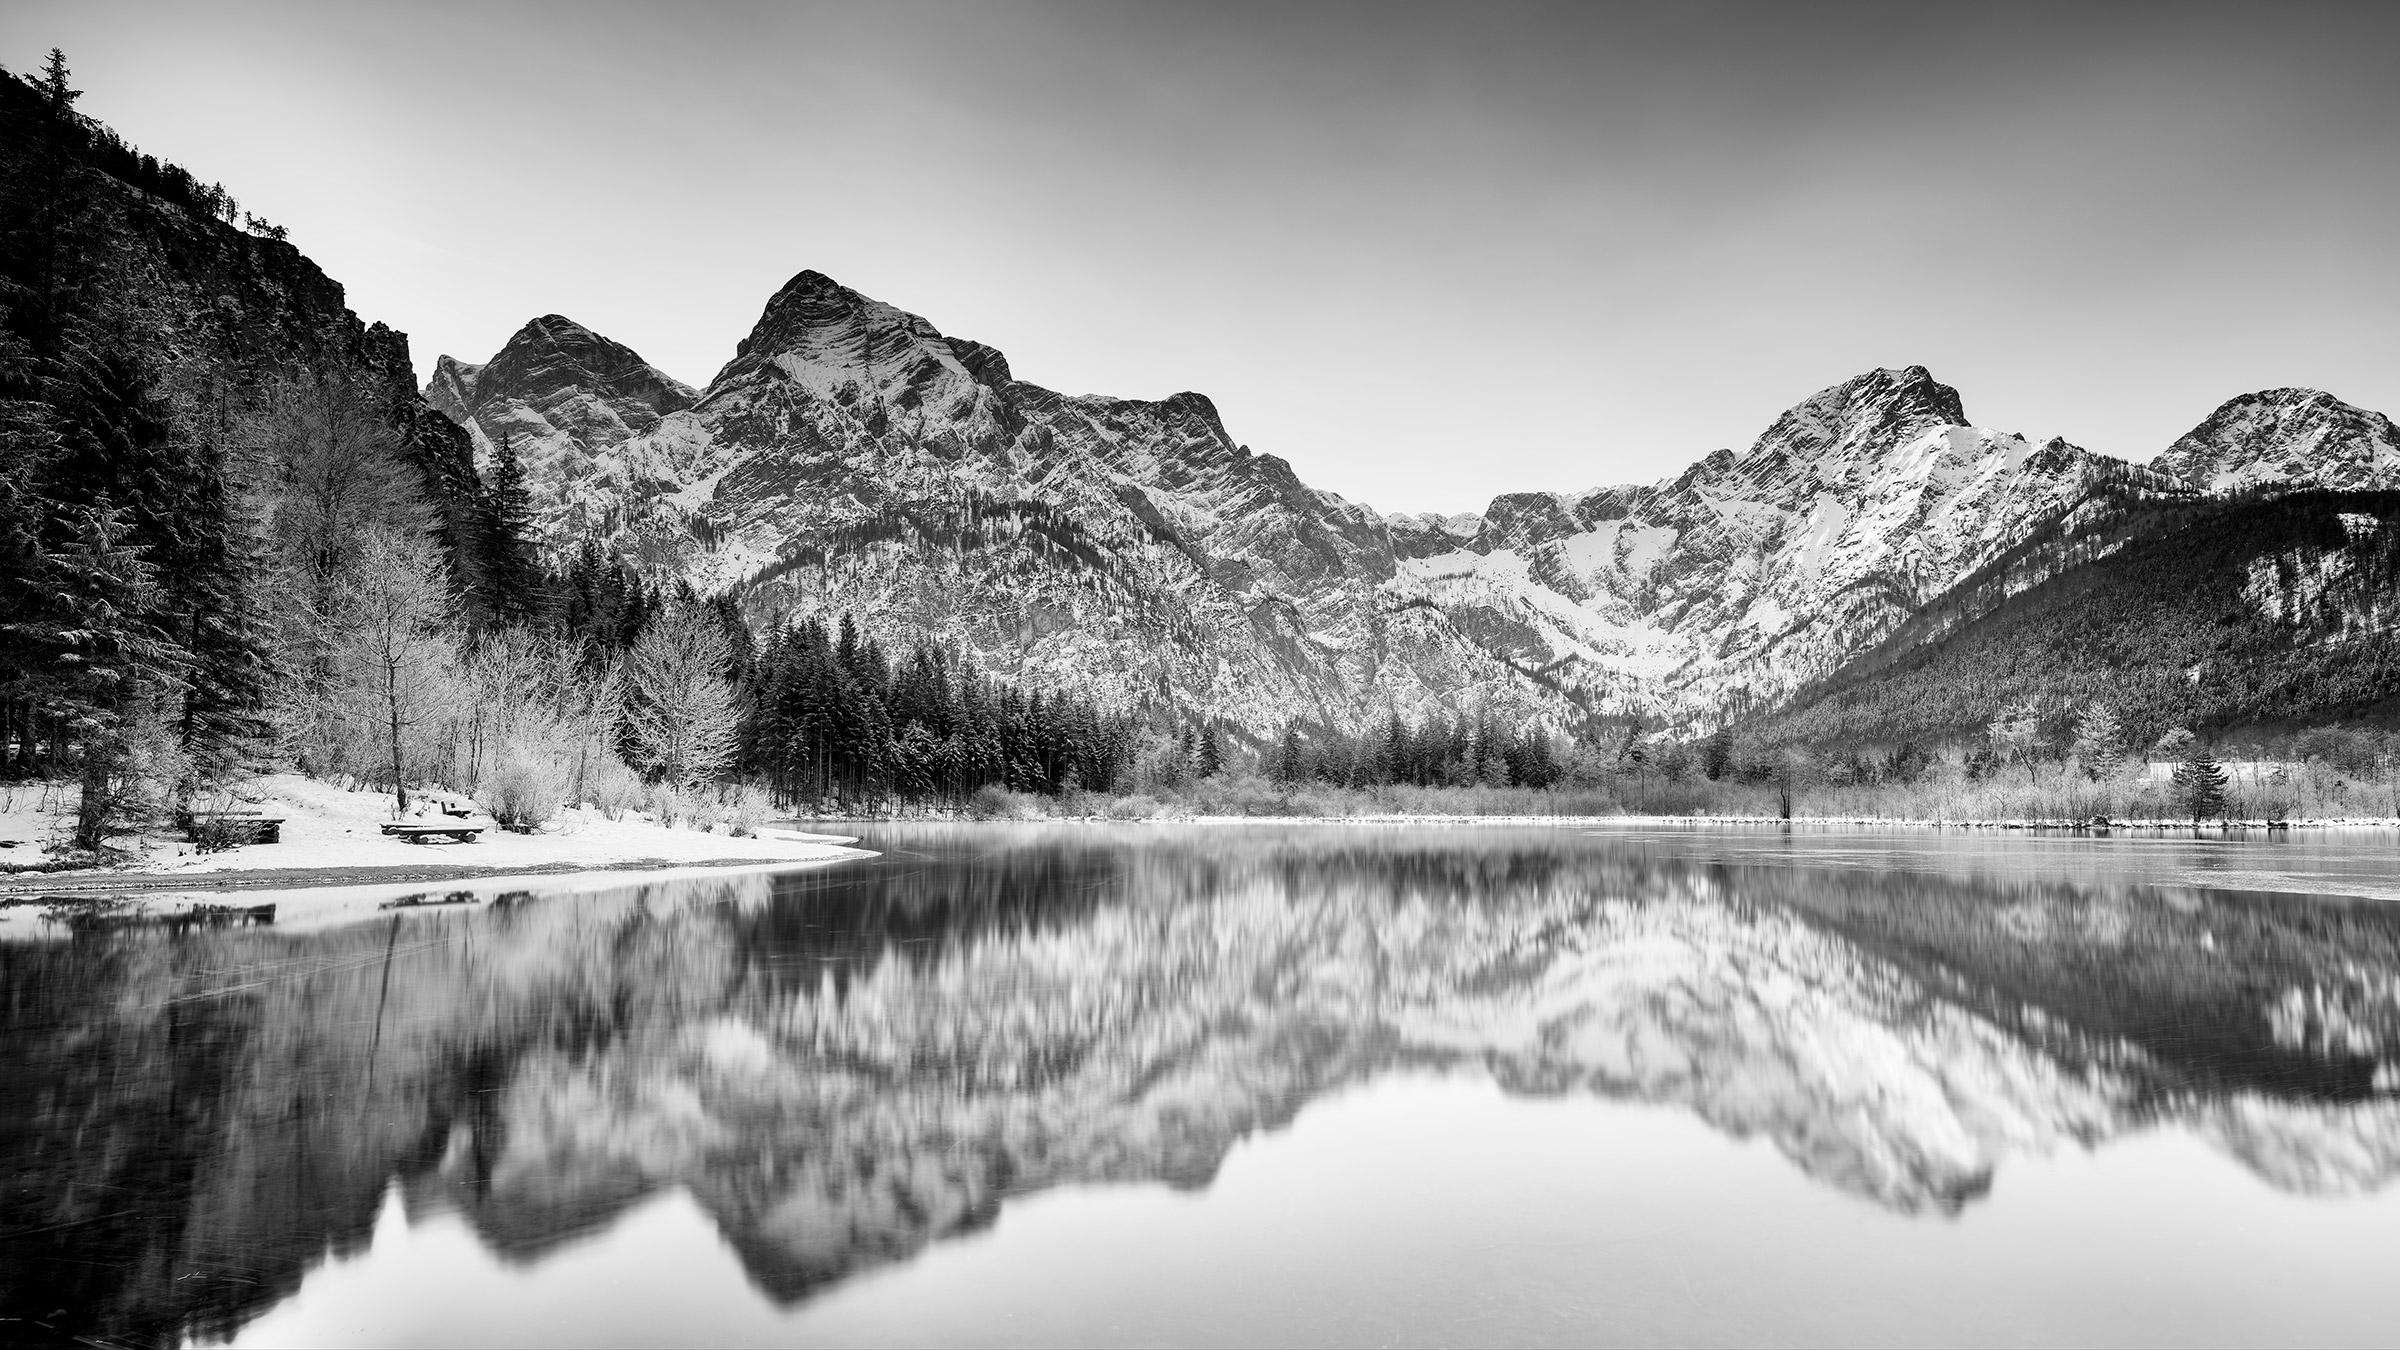 Black and White Photograph Gerald Berghammer - Paysage de lac, panorama d'hiver, photographie d'art en noir et blanc, paysage aquatique